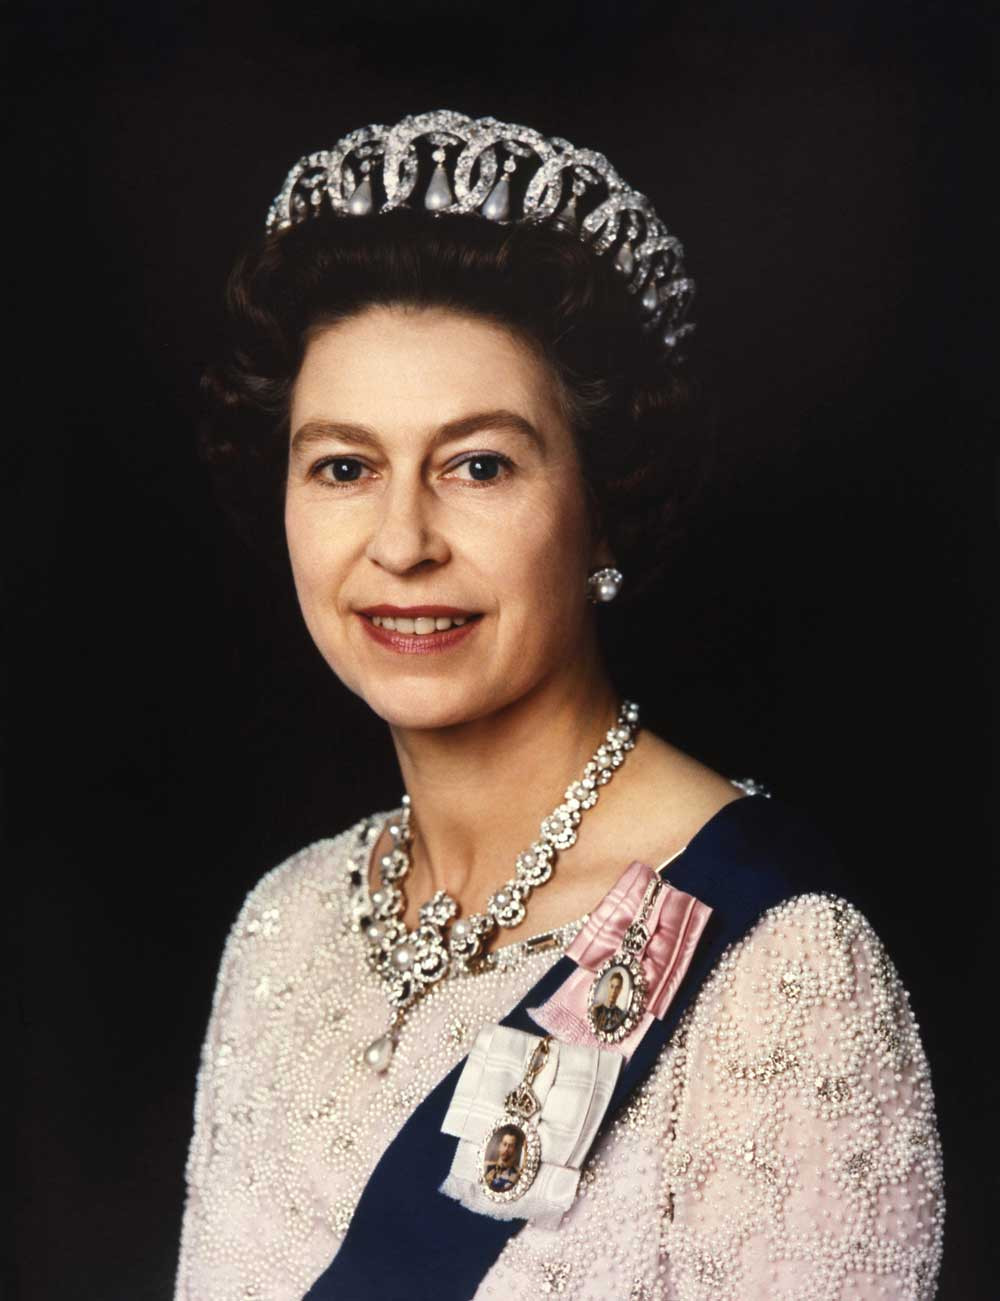 Chân dung Nữ hoàng năm 1977 thời điểm Đại lễ Bạc. Ảnh: CNN.